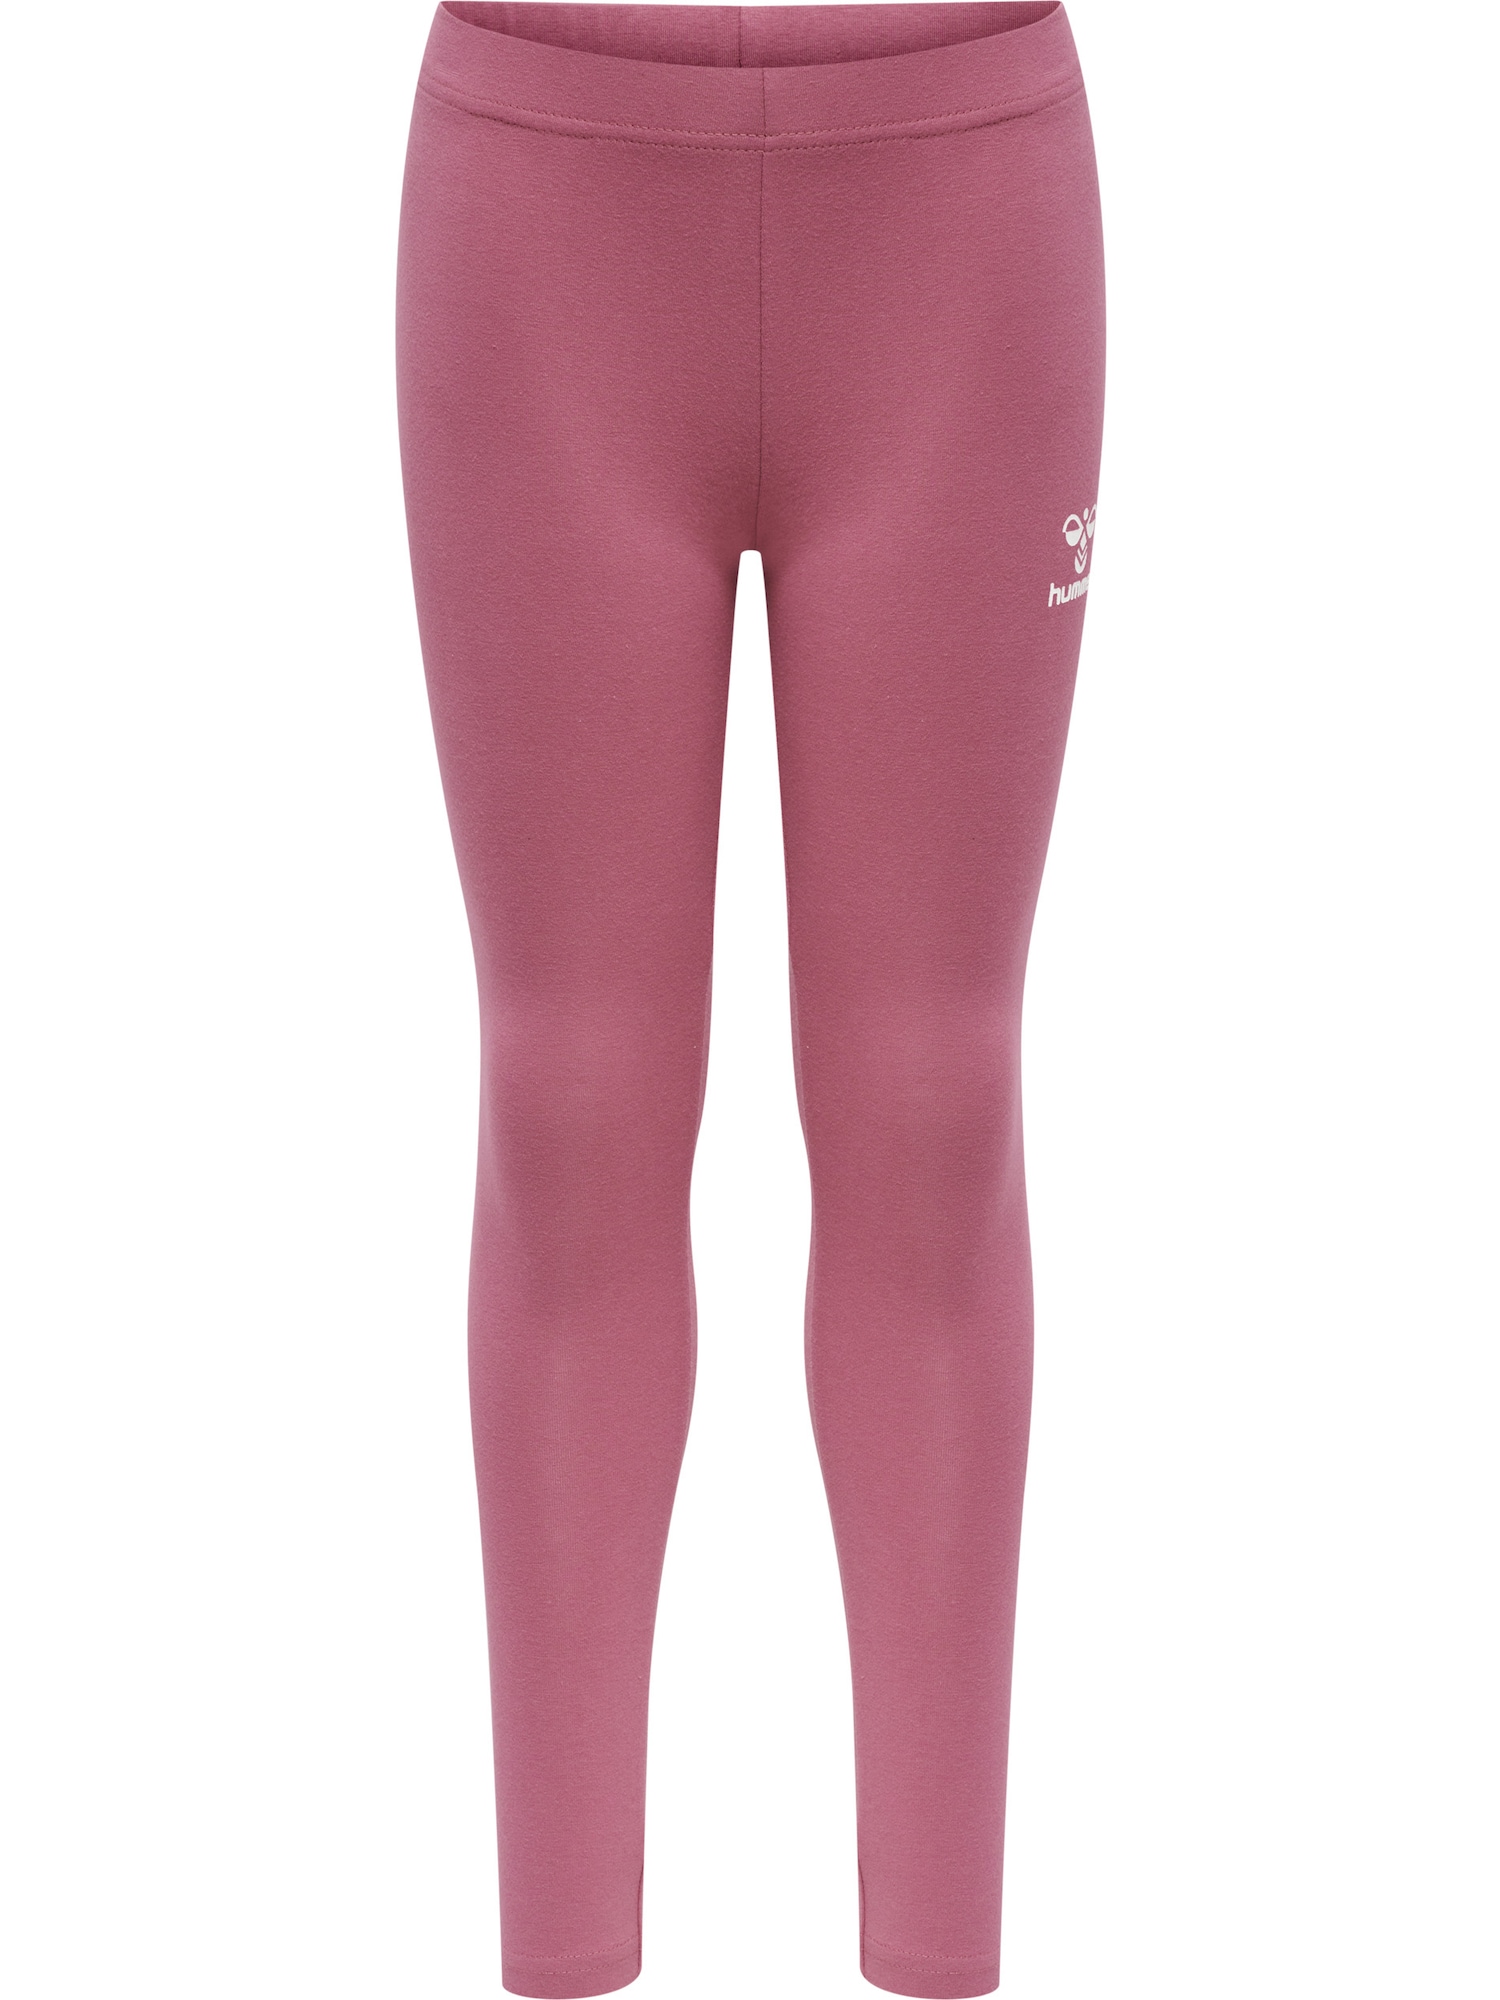 Hummel Sportinės kelnės 'Onze' ryškiai rožinė spalva / balta